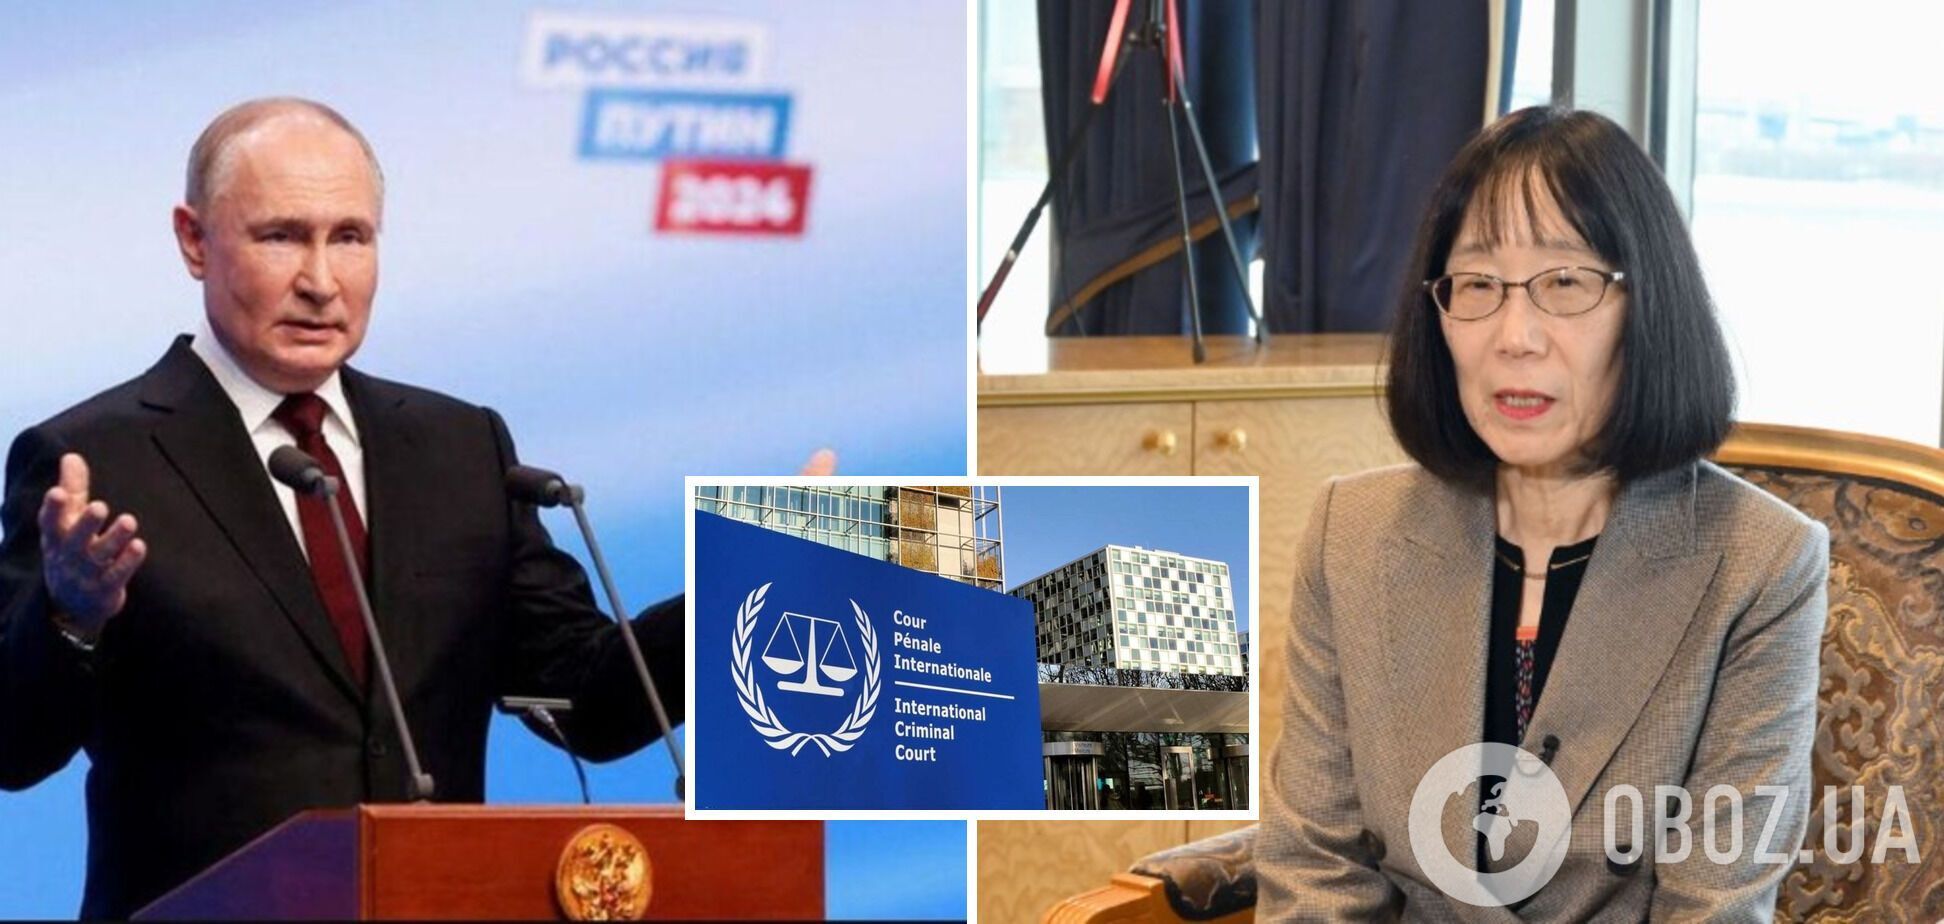 'Месть неба медленная, но верная': глава МКС заявила, что Путин не избежит правосудия